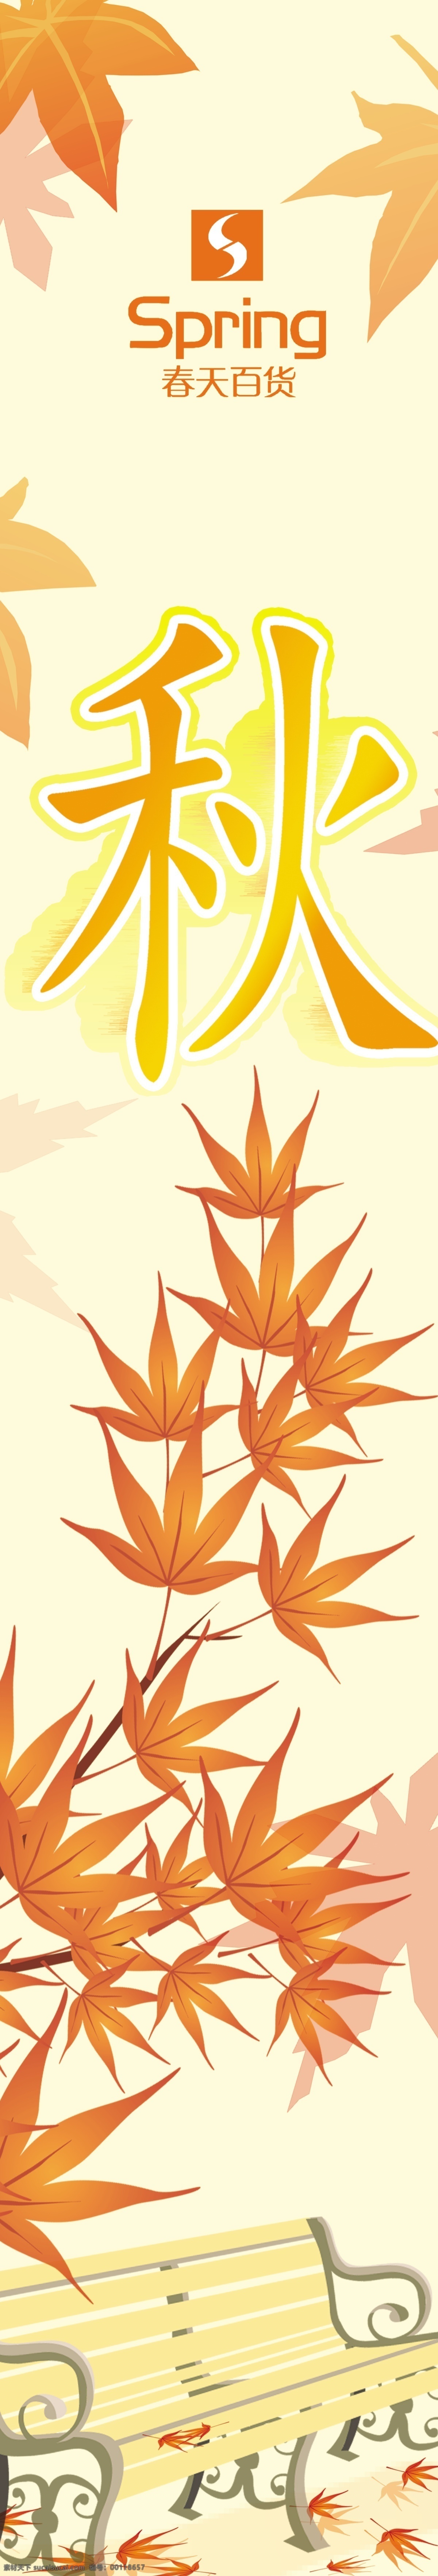 秋季版面 秋季海报 秋季风景 秋季景色 秋季背景 枫叶 广告设计模板 源文件